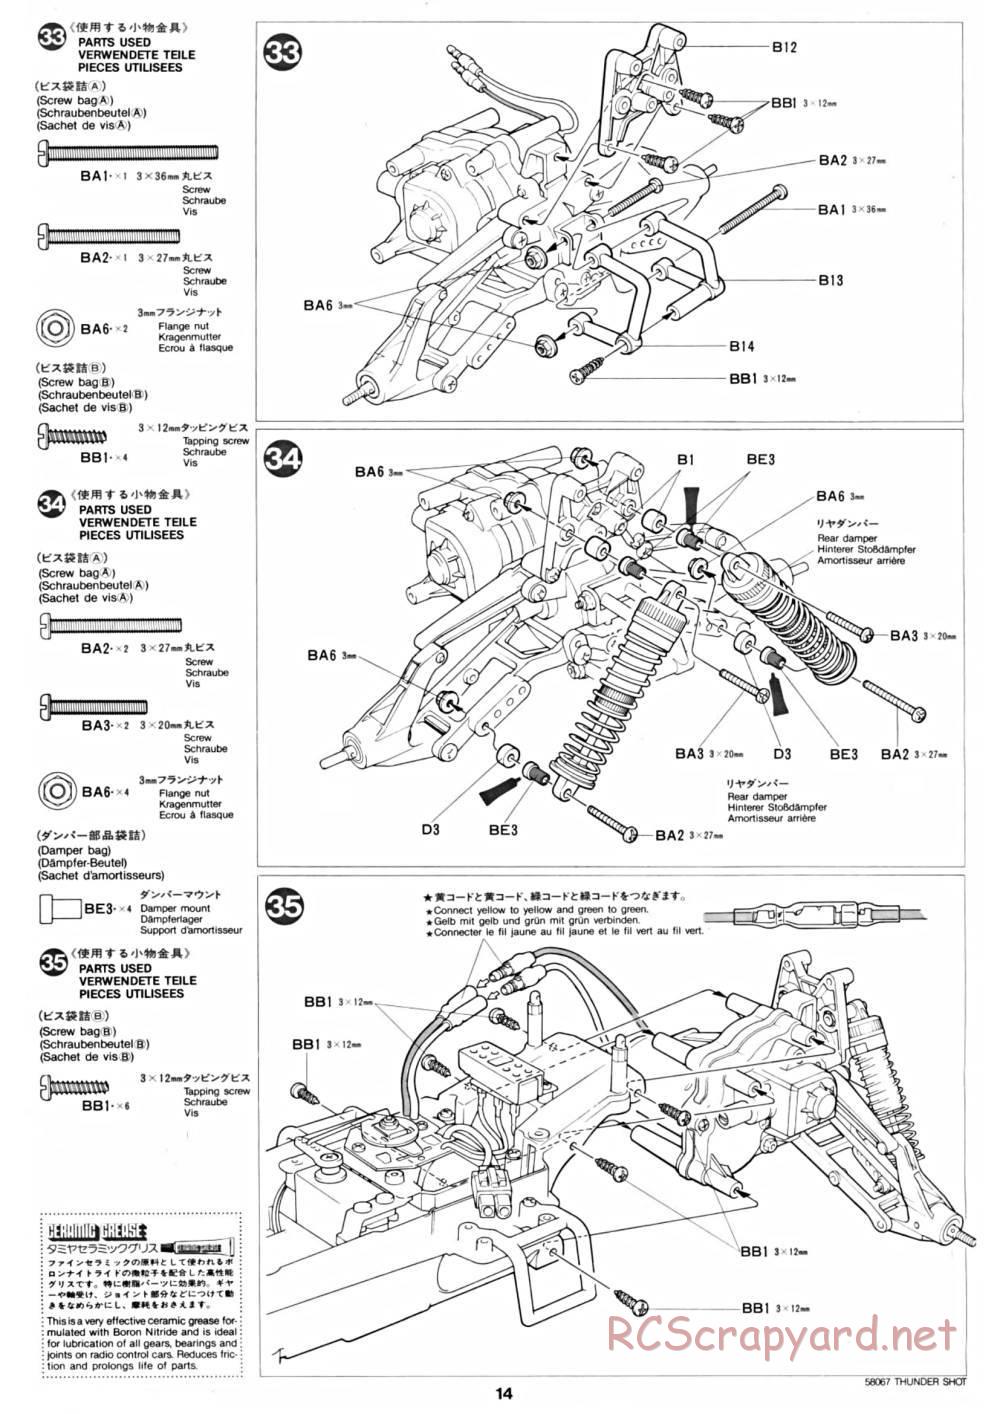 Tamiya - Thunder Shot - 58067 - Manual - Page 14